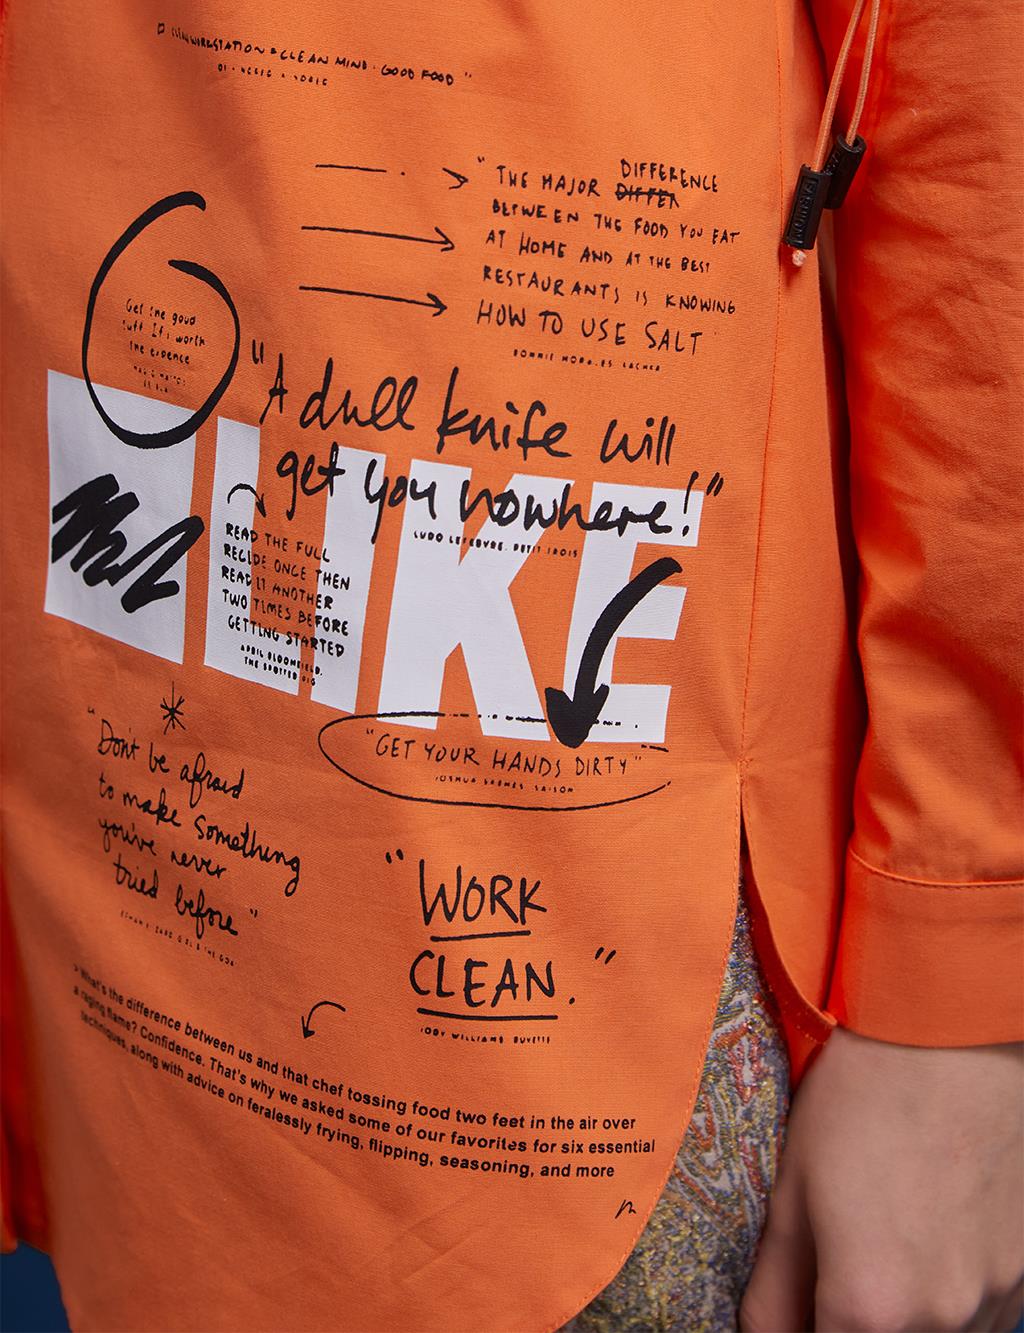 Shoulder Detailed Printed Shirt Orange